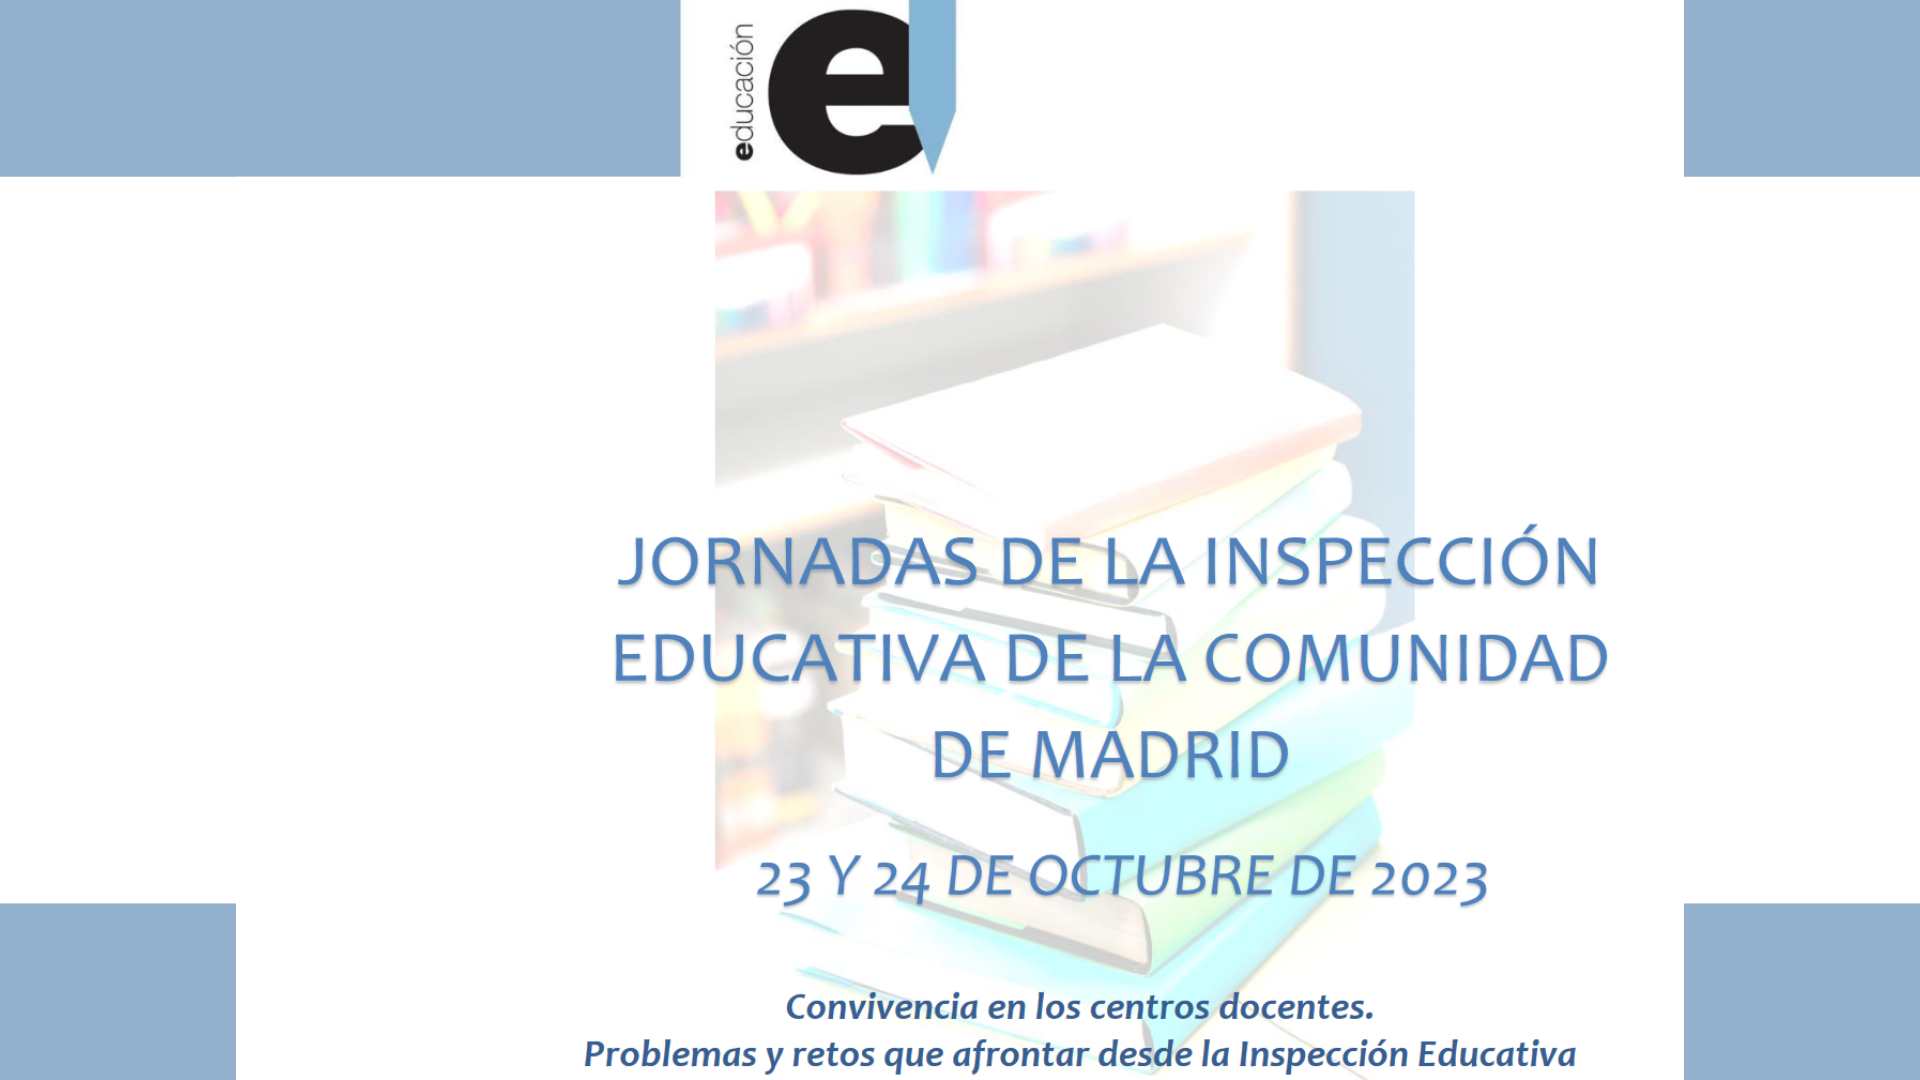 Jornadas de la inspección educativa de la comunidad de Madrid